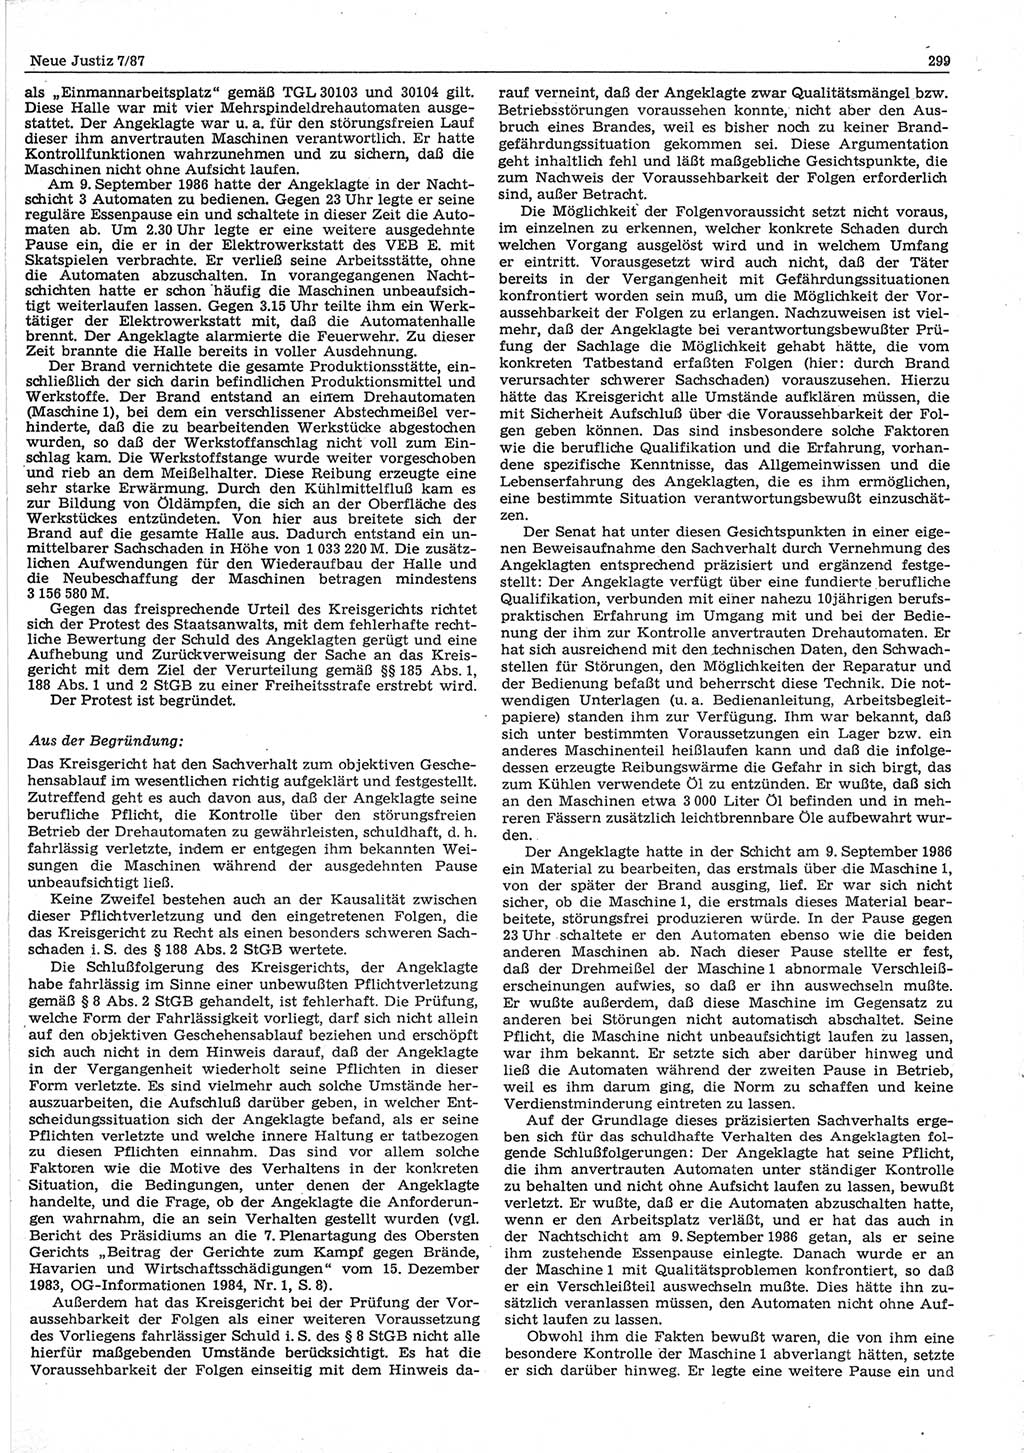 Neue Justiz (NJ), Zeitschrift für sozialistisches Recht und Gesetzlichkeit [Deutsche Demokratische Republik (DDR)], 41. Jahrgang 1987, Seite 299 (NJ DDR 1987, S. 299)